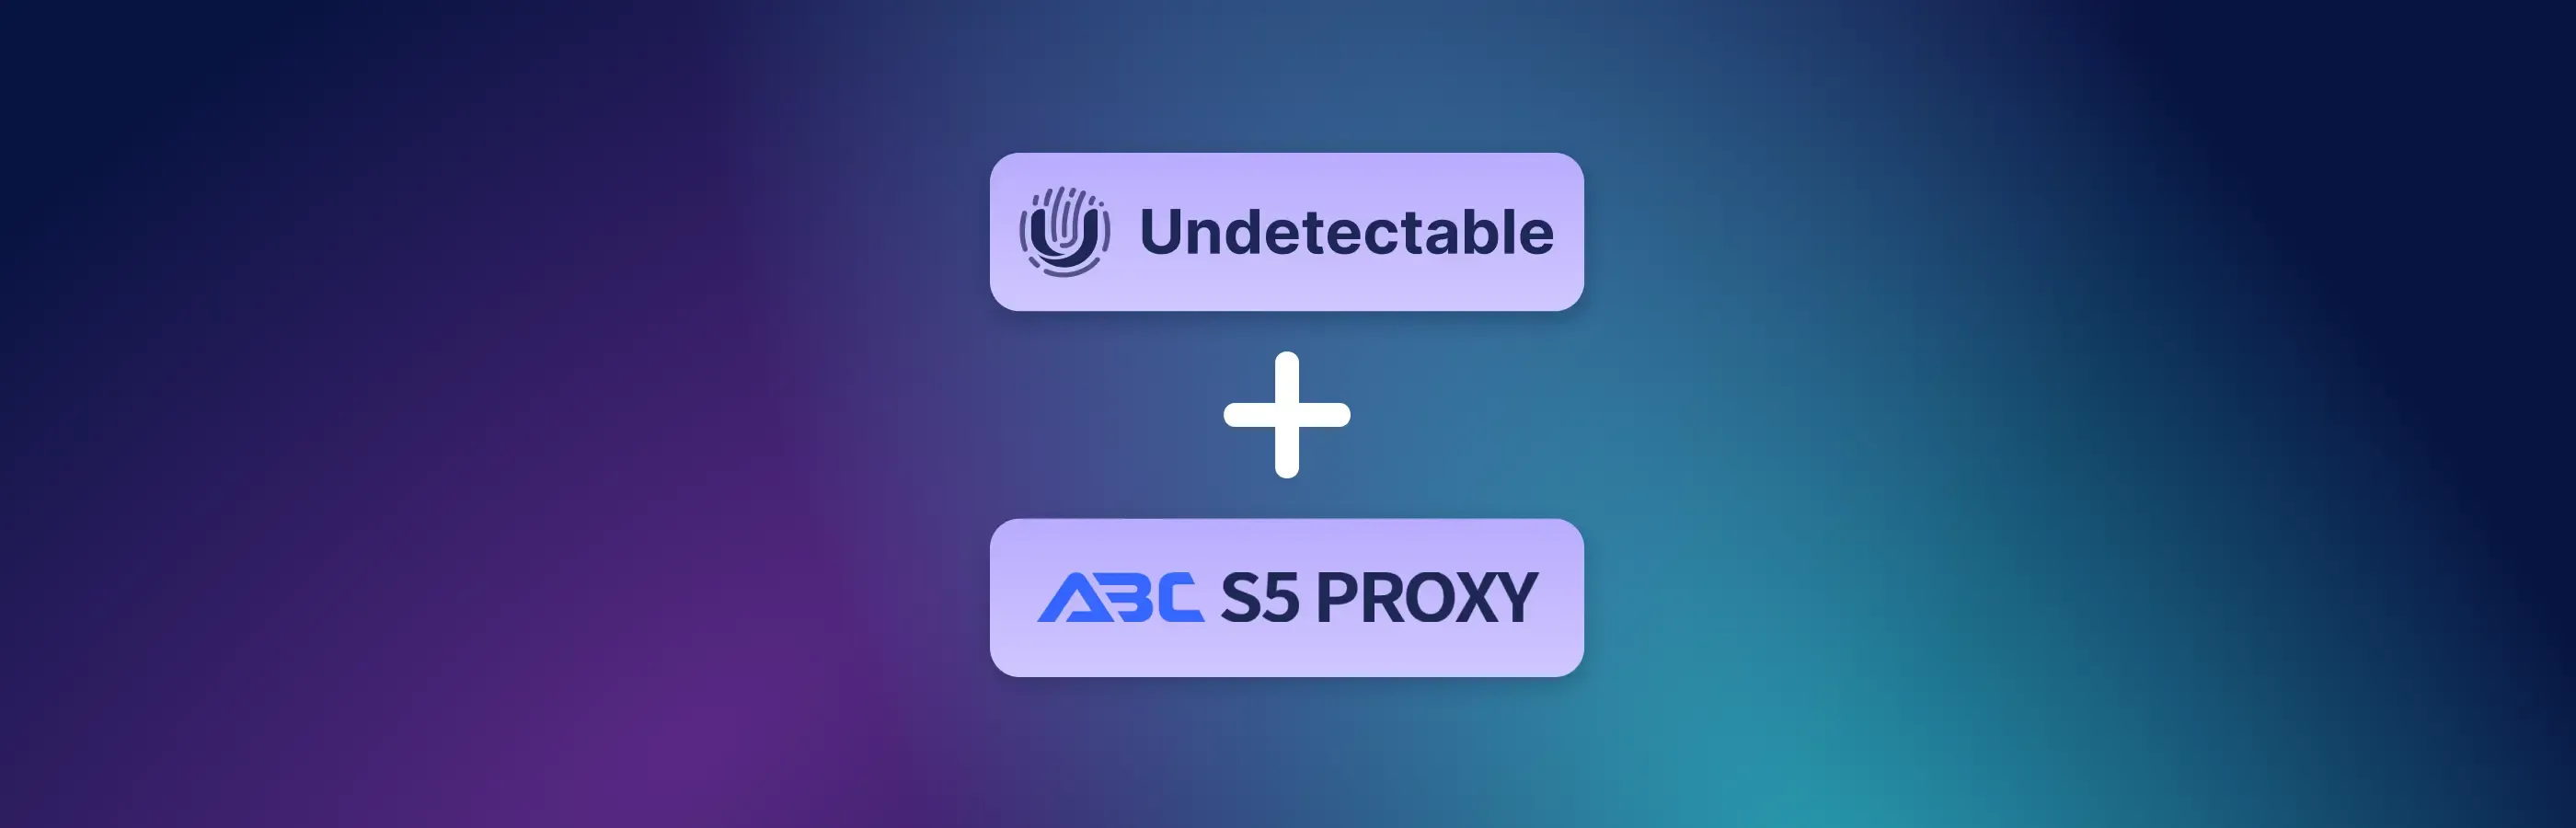 Instrucciones para conectar ABCProxy a Undetectable